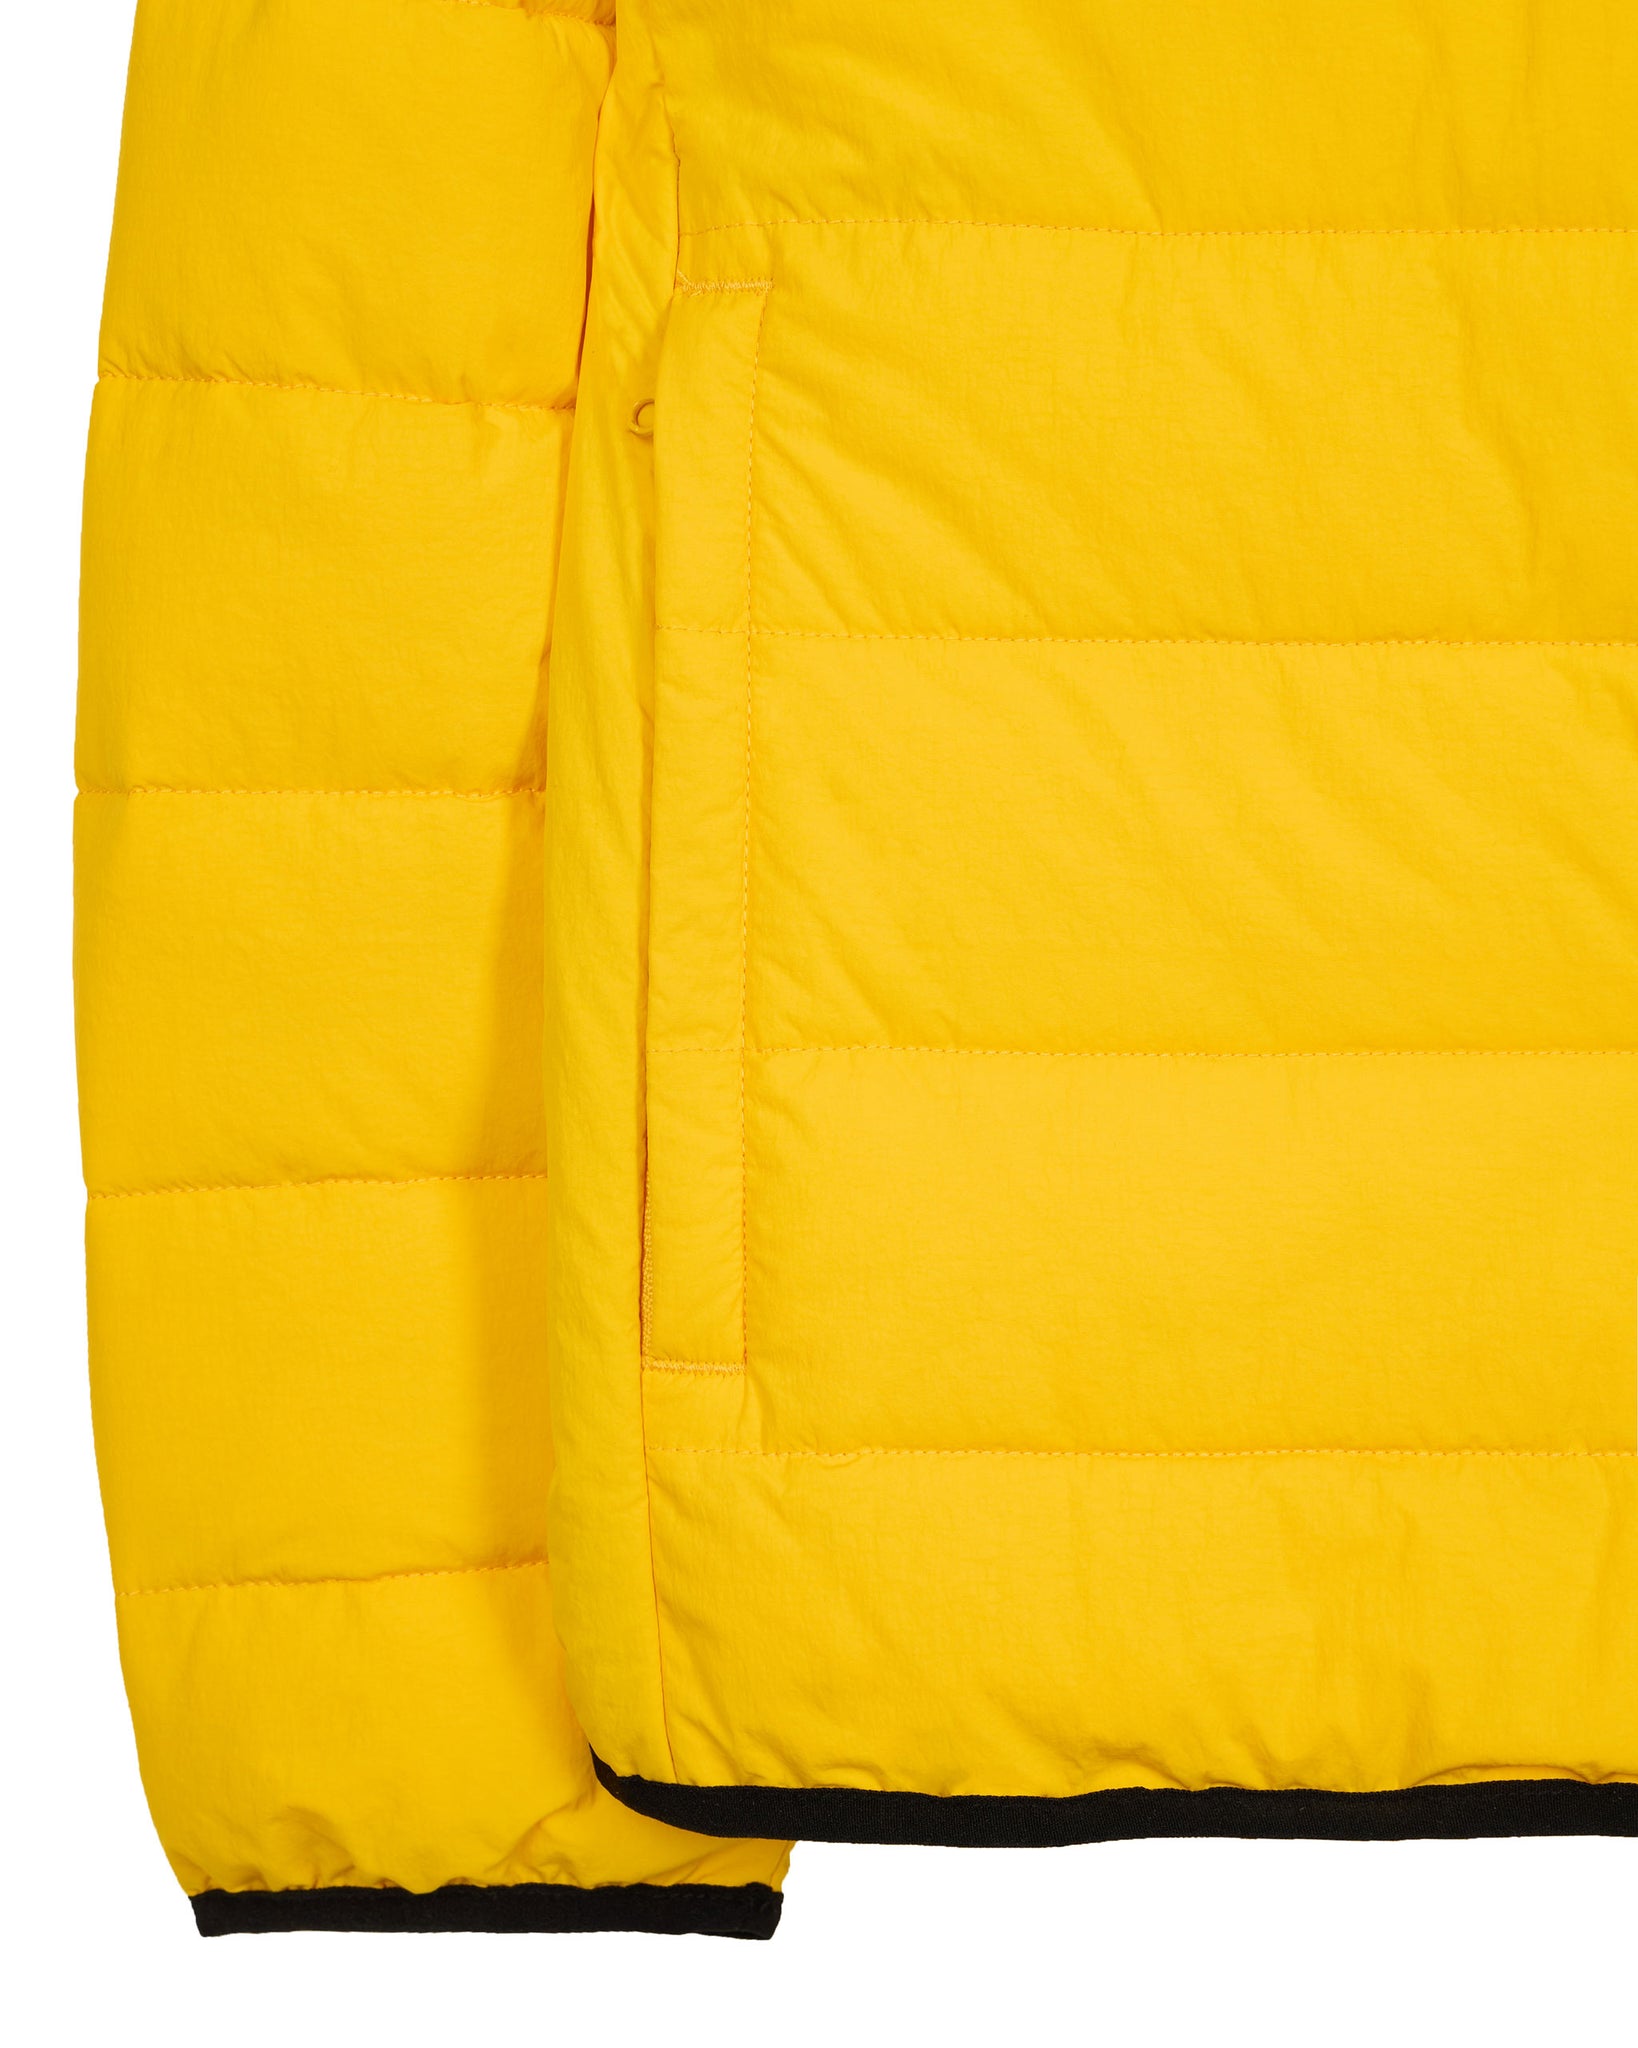 La Guardia Padded Jacket Buttercup Yellow